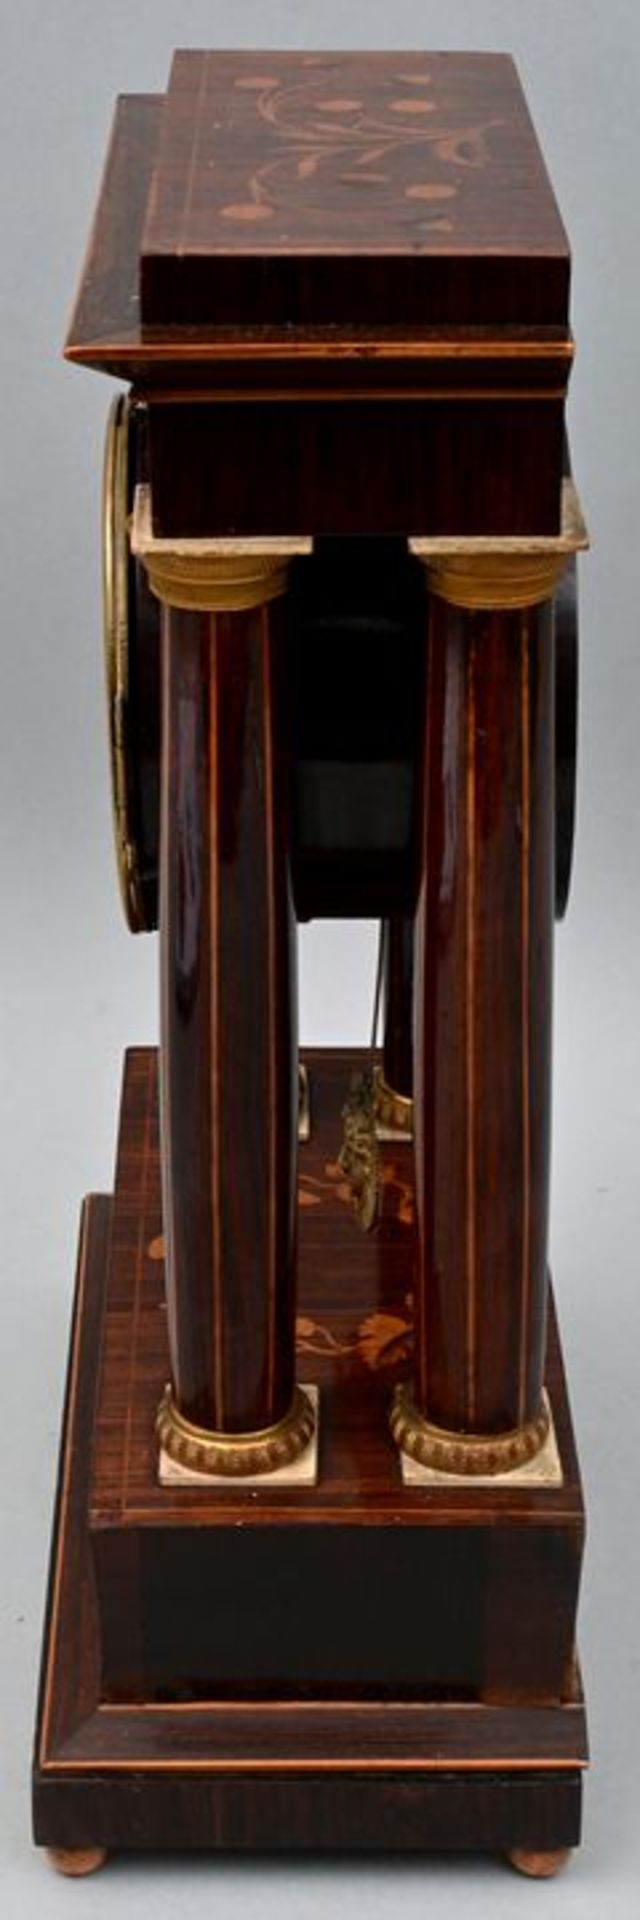 Stutzuhr Franz Liszt, Wien / mantel clock - Bild 2 aus 7